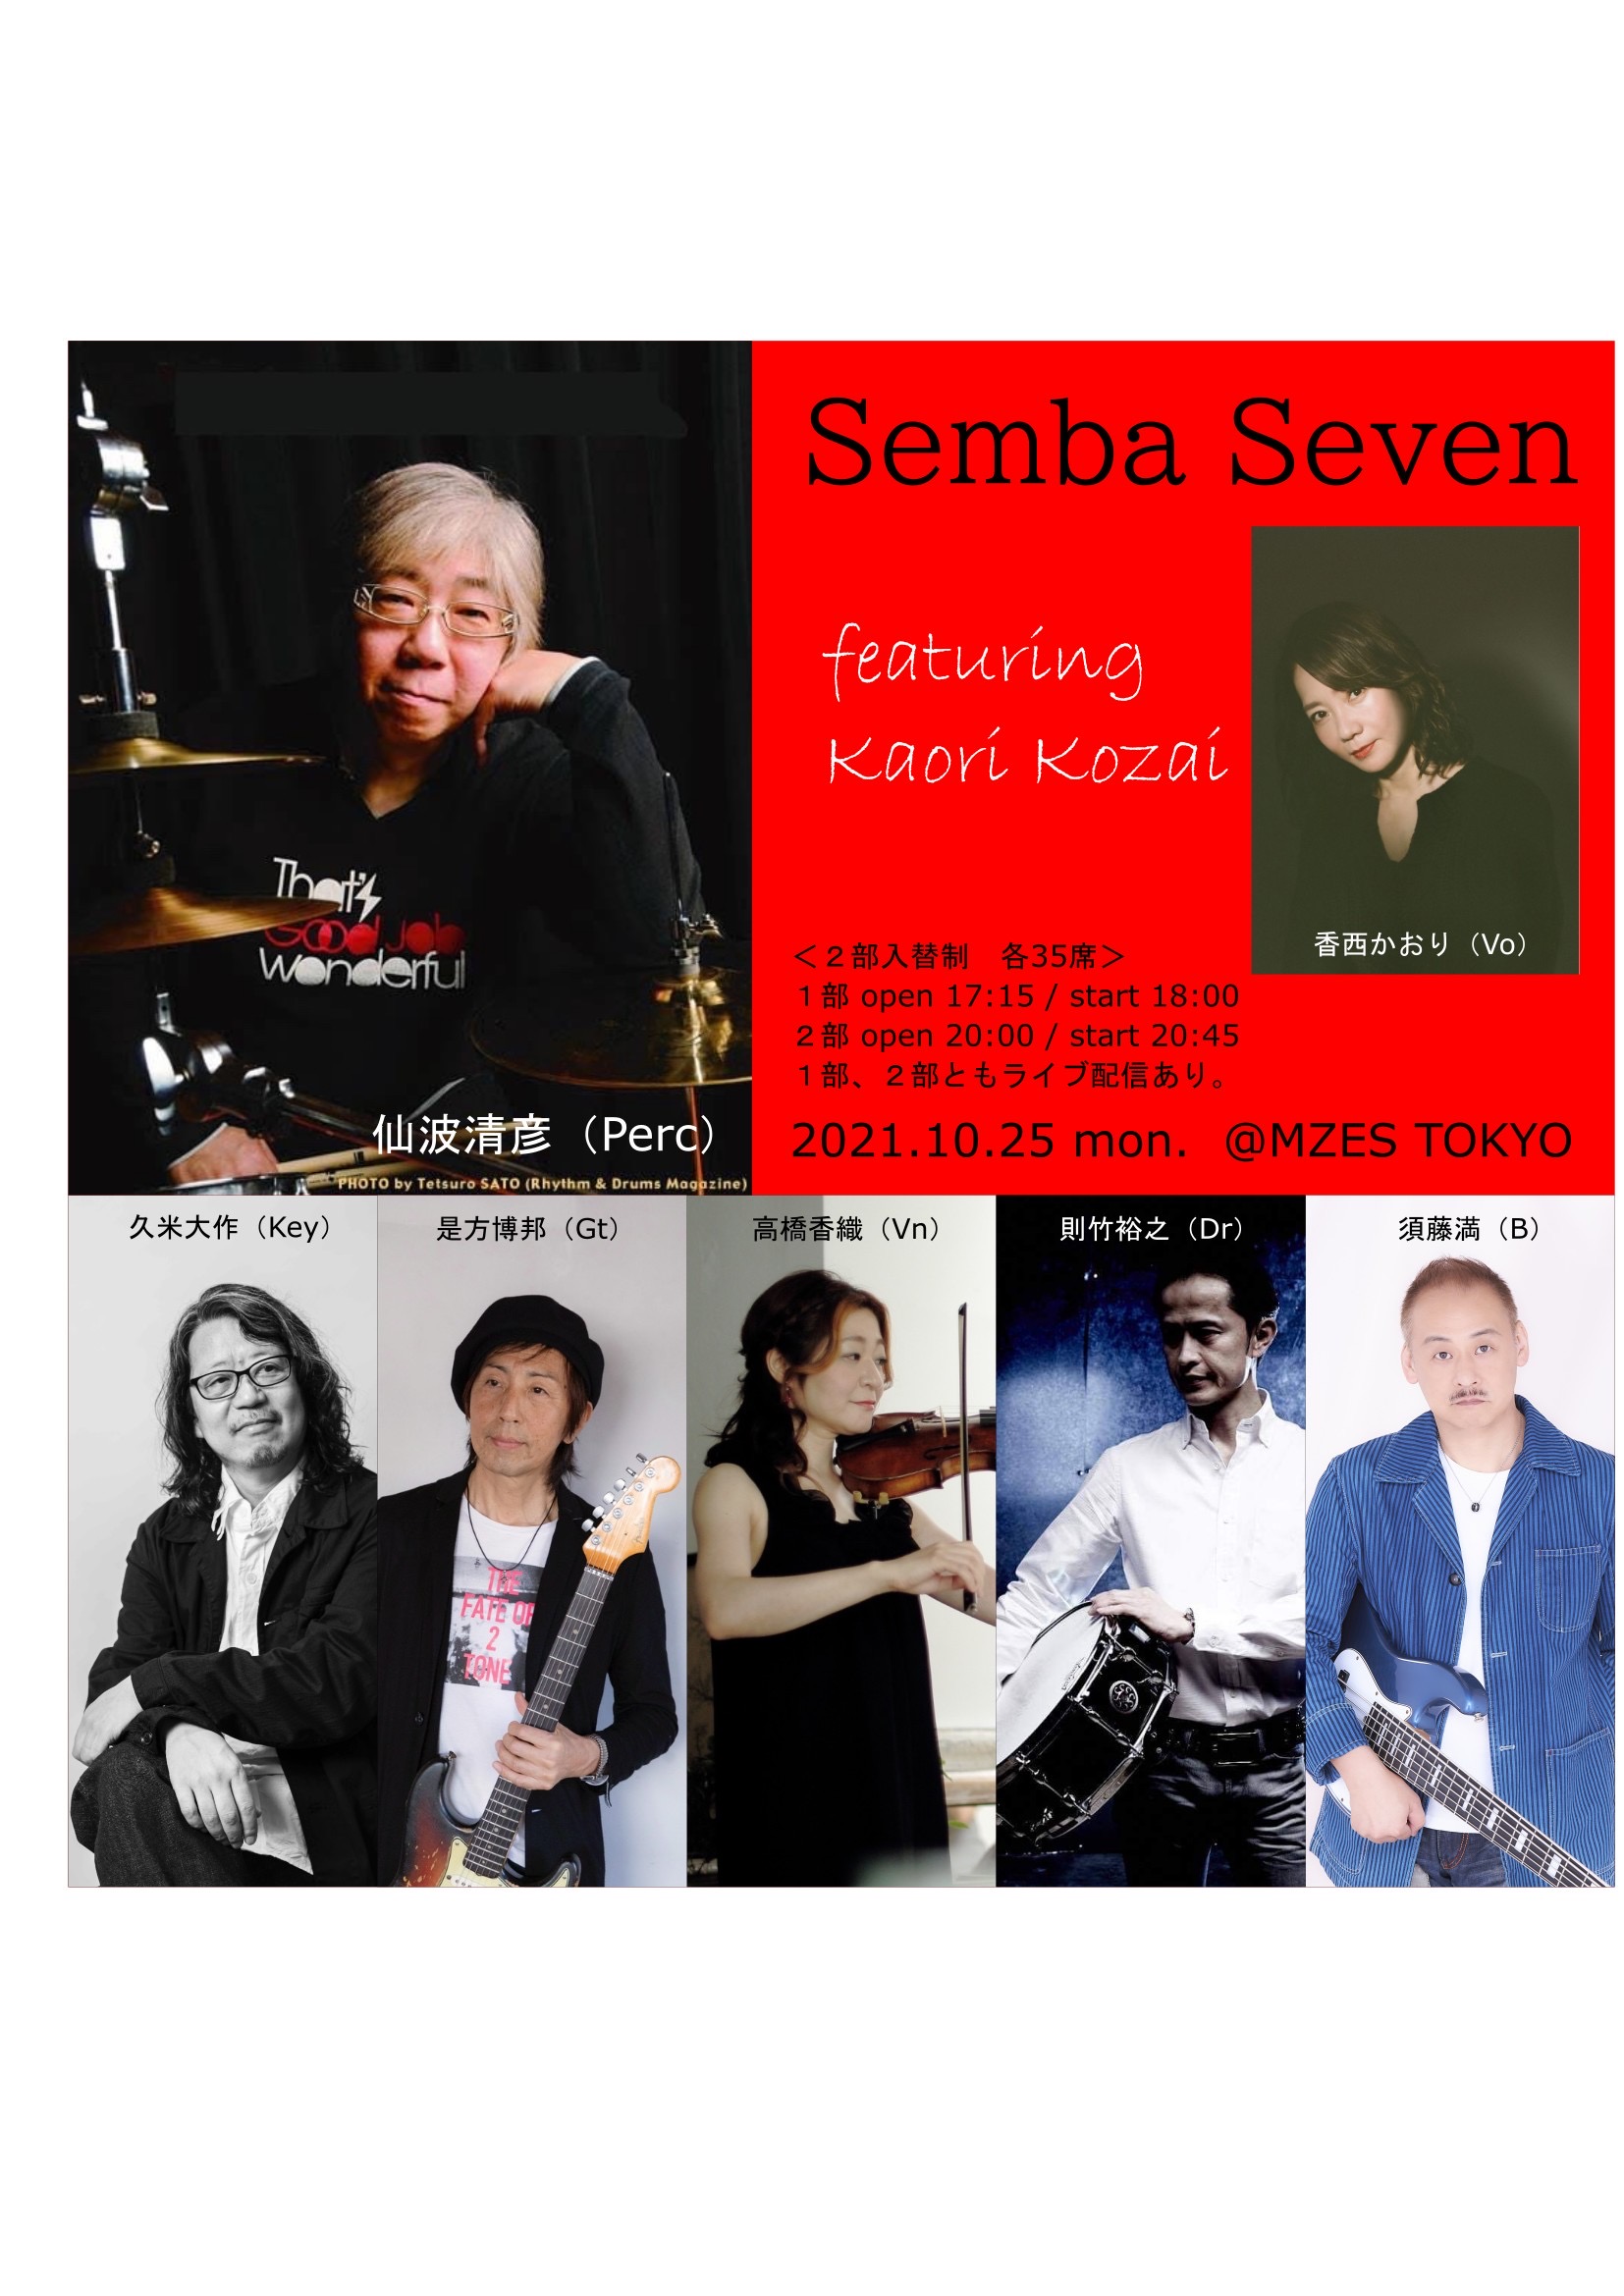 【1部配信チケット】Semba Seven featuring Kaori Kozai